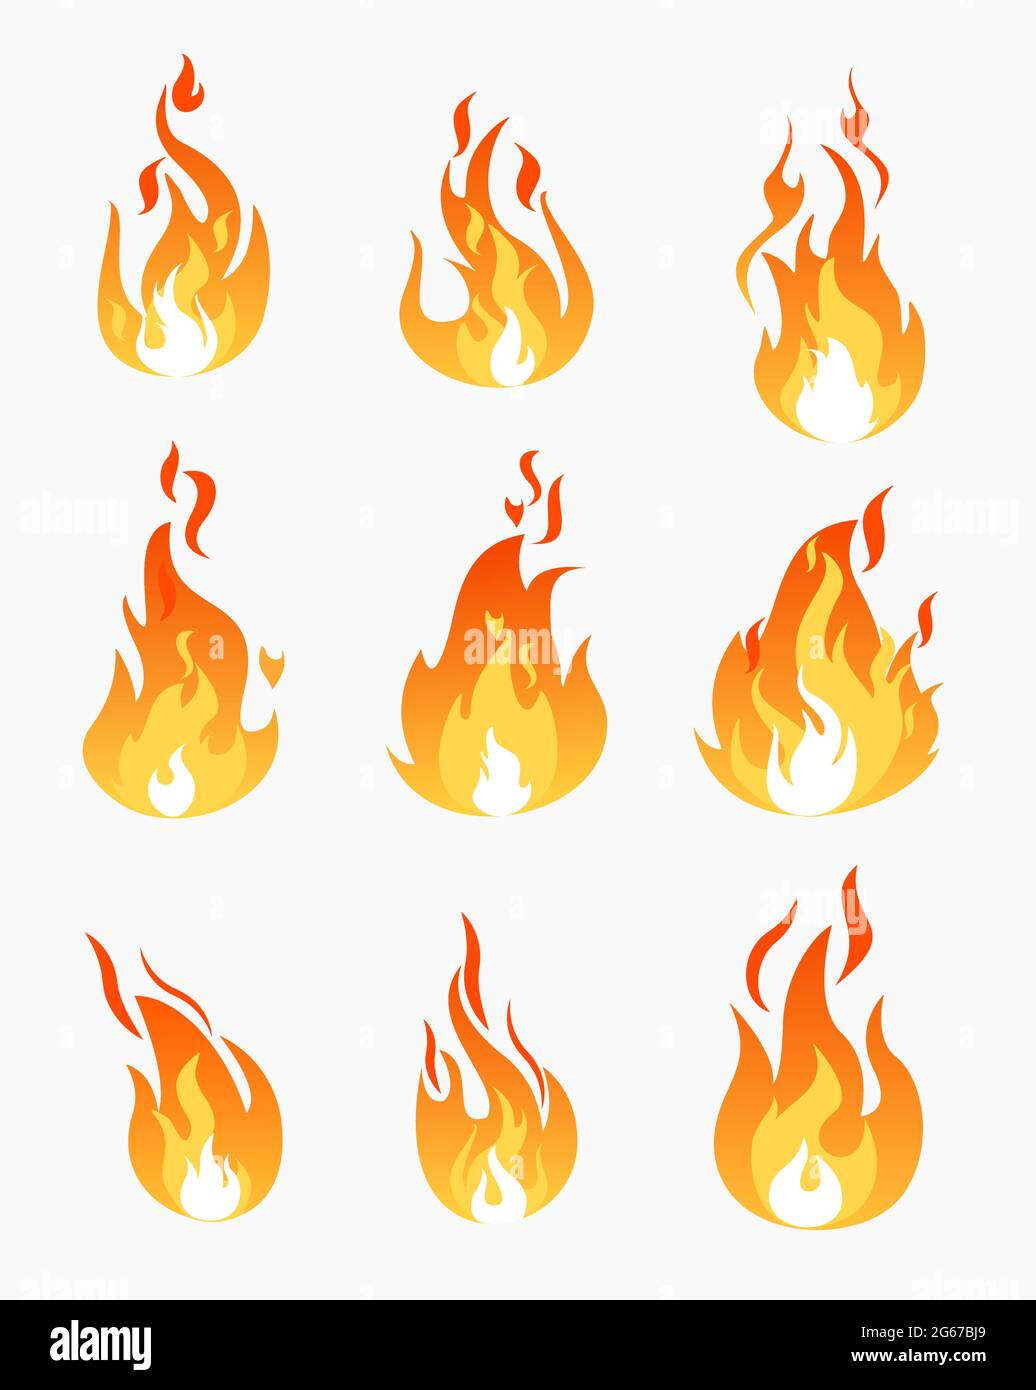 Illustrazione vettoriale insieme di icone di fiamme fuoco su sfondo bianco. Collezione di fiamme in forme diverse in stile piatto. Illustrazione Vettoriale